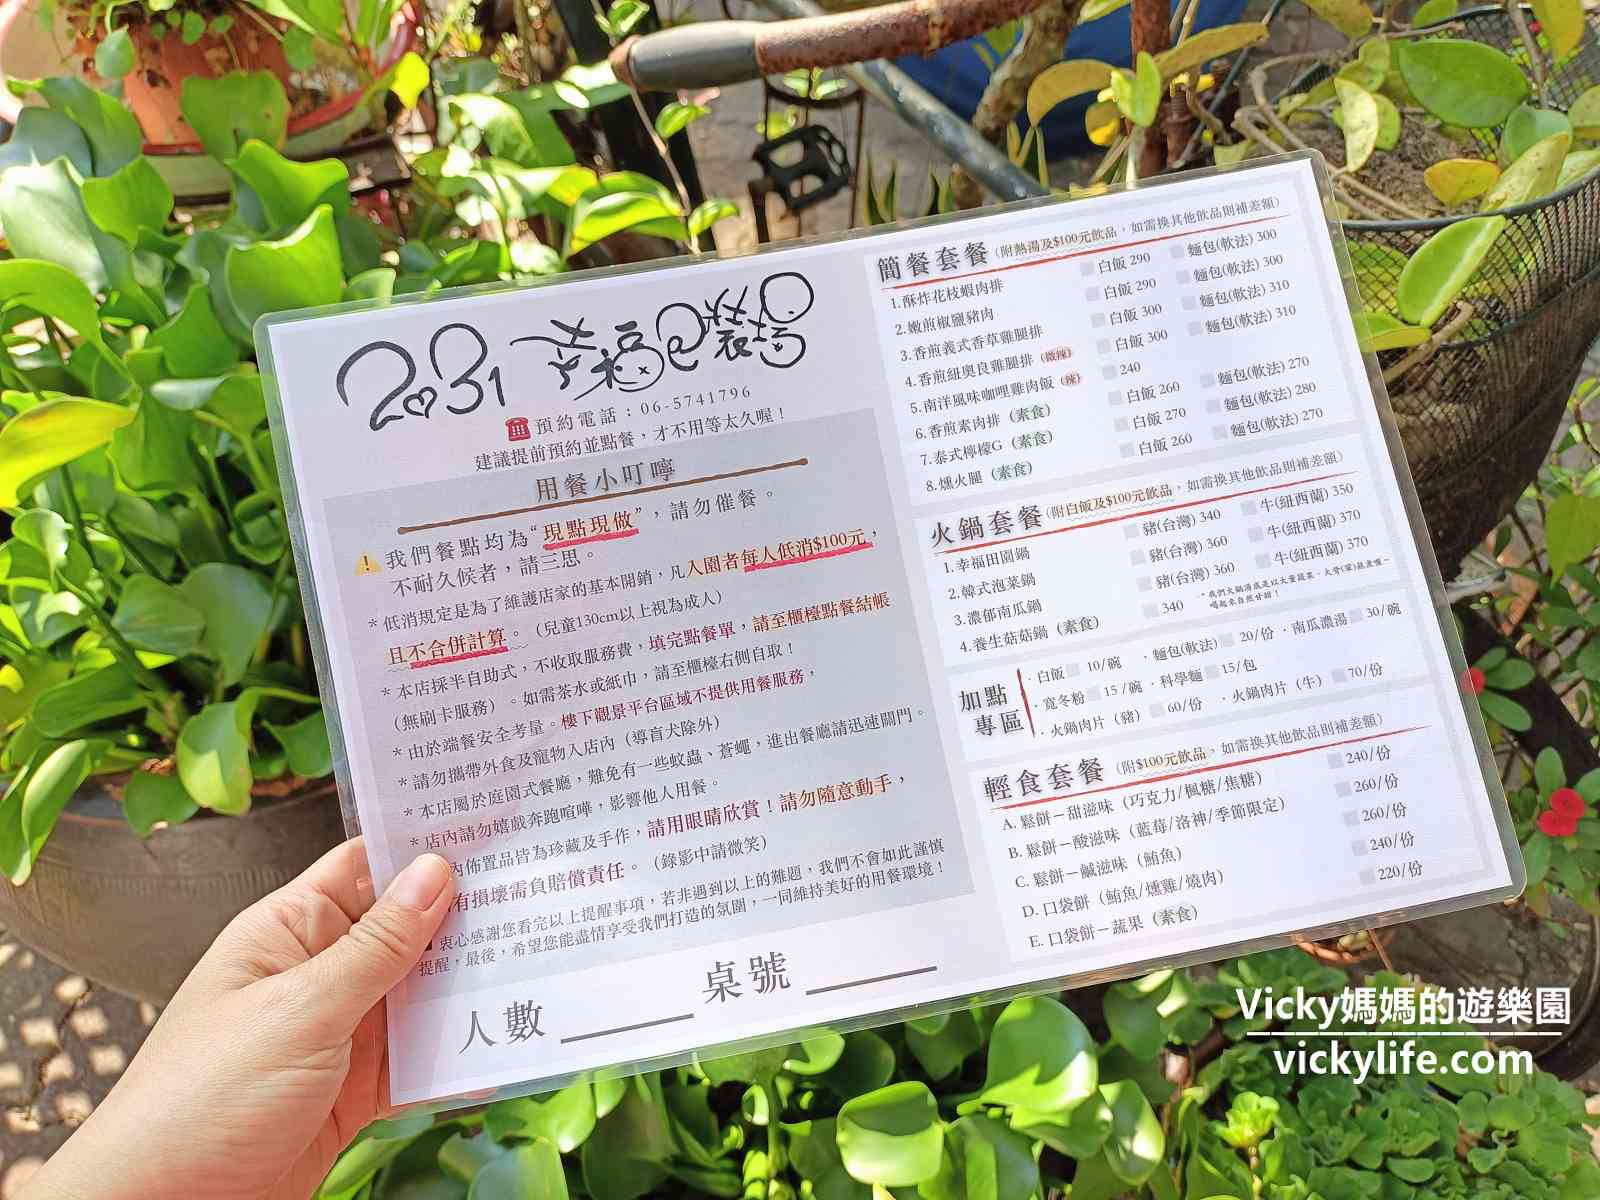 台南景觀餐廳|2031幸福包裝場：美式鄉村風格搭配上一整座園區的草木扶疏，令人心曠神怡的用餐環境啊